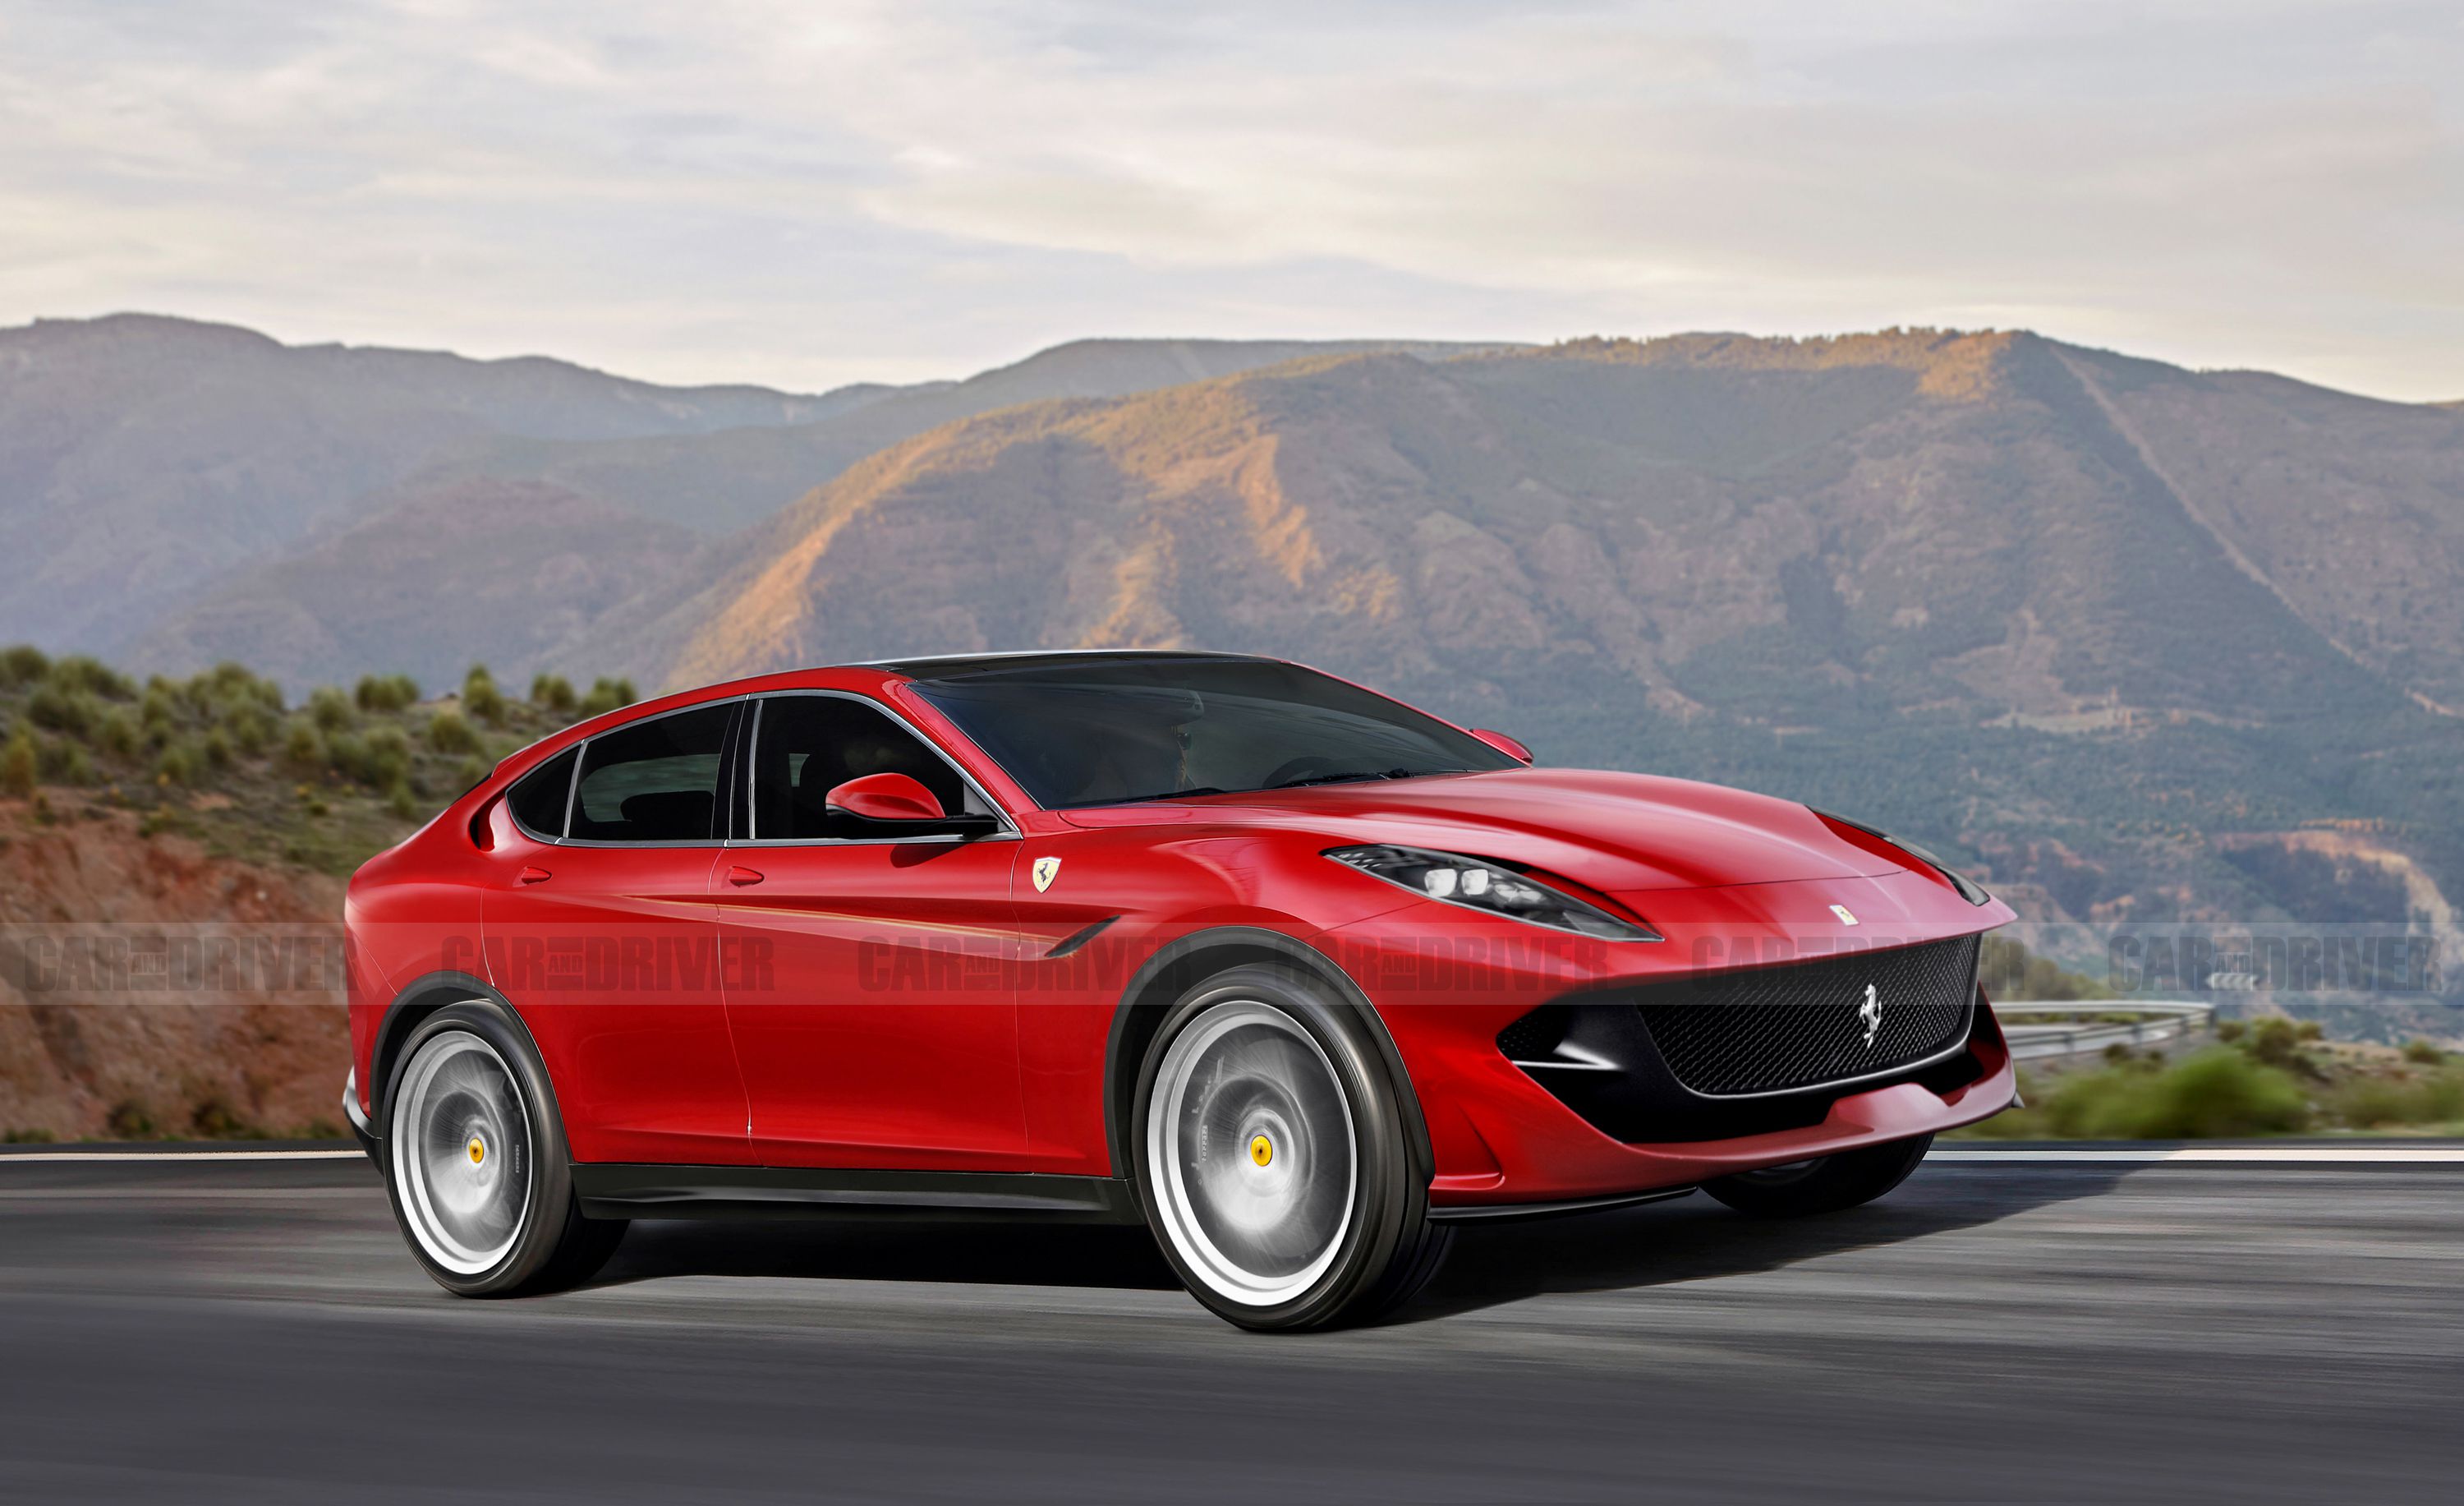 El SUV híbrido de Ferrari aparecerá oficialmente en 2022